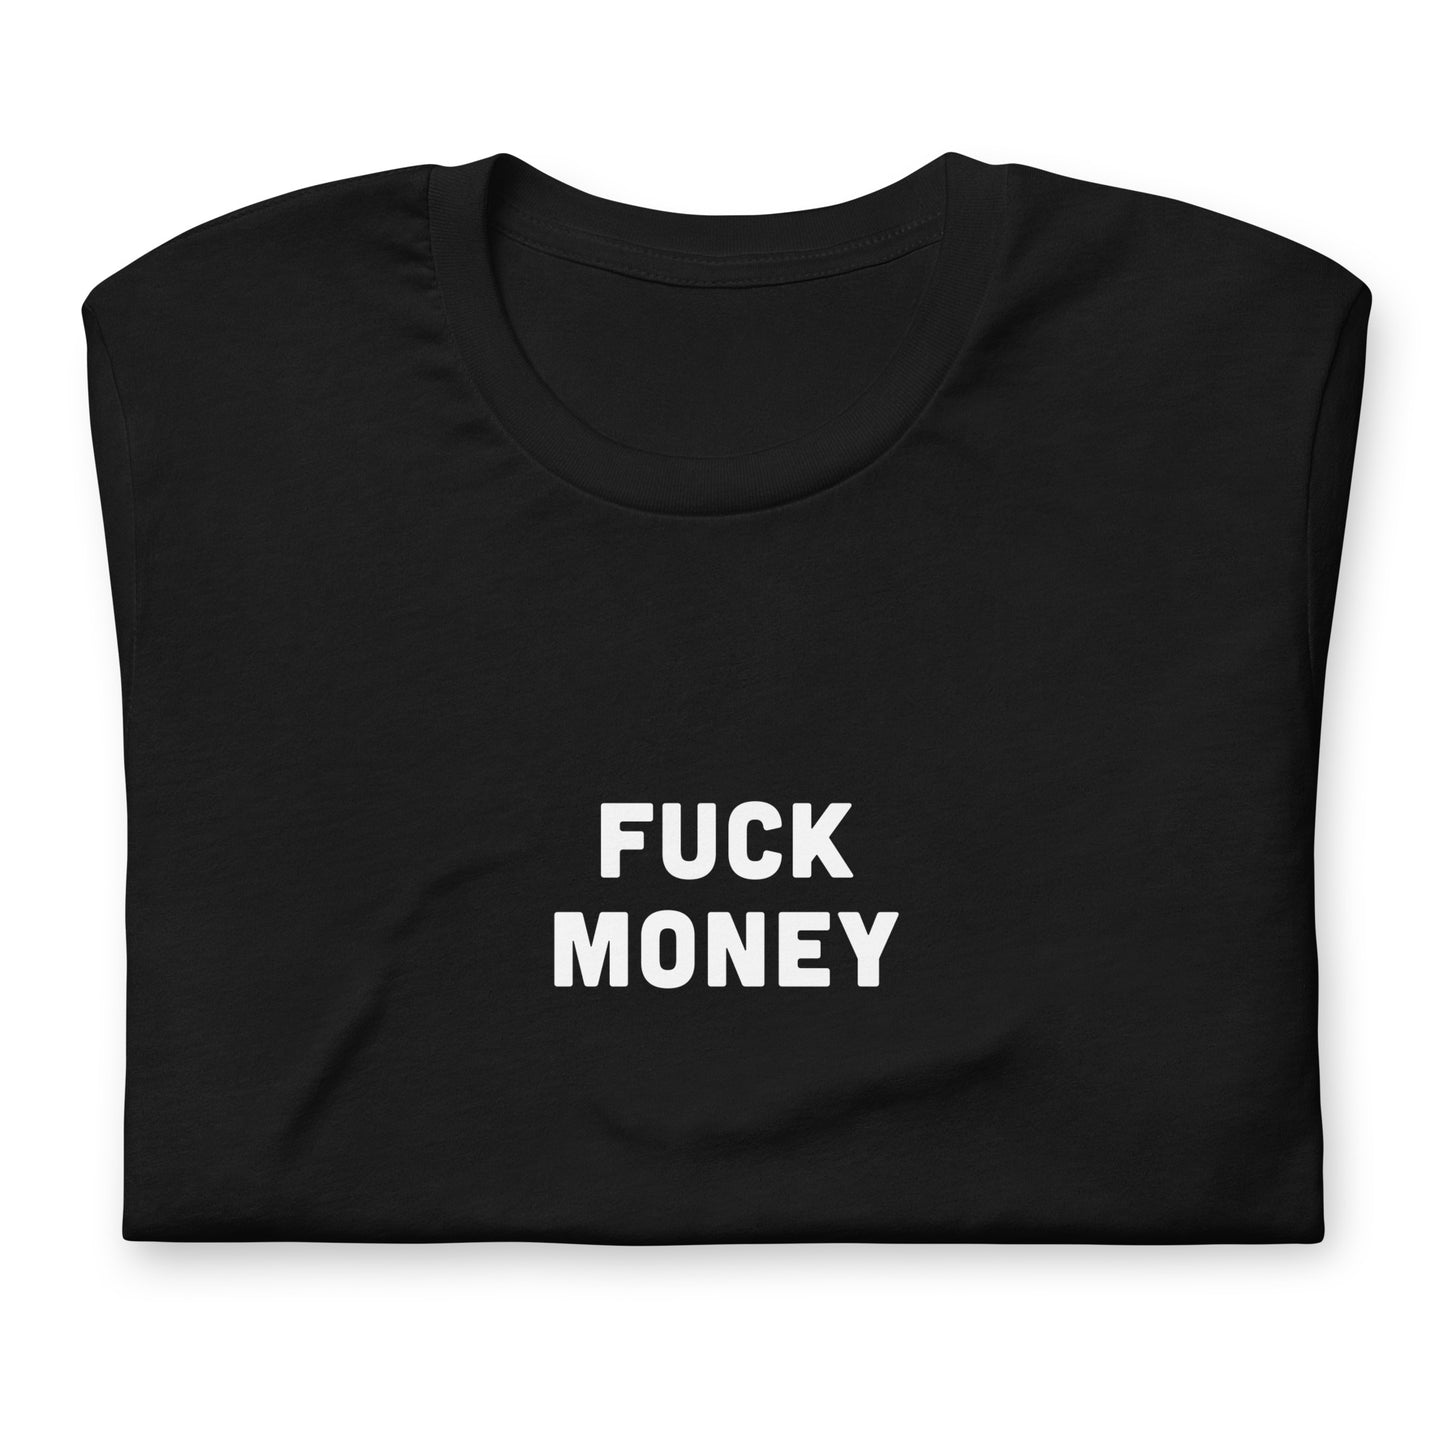 Fuck Money T-Shirt Size M Color Black